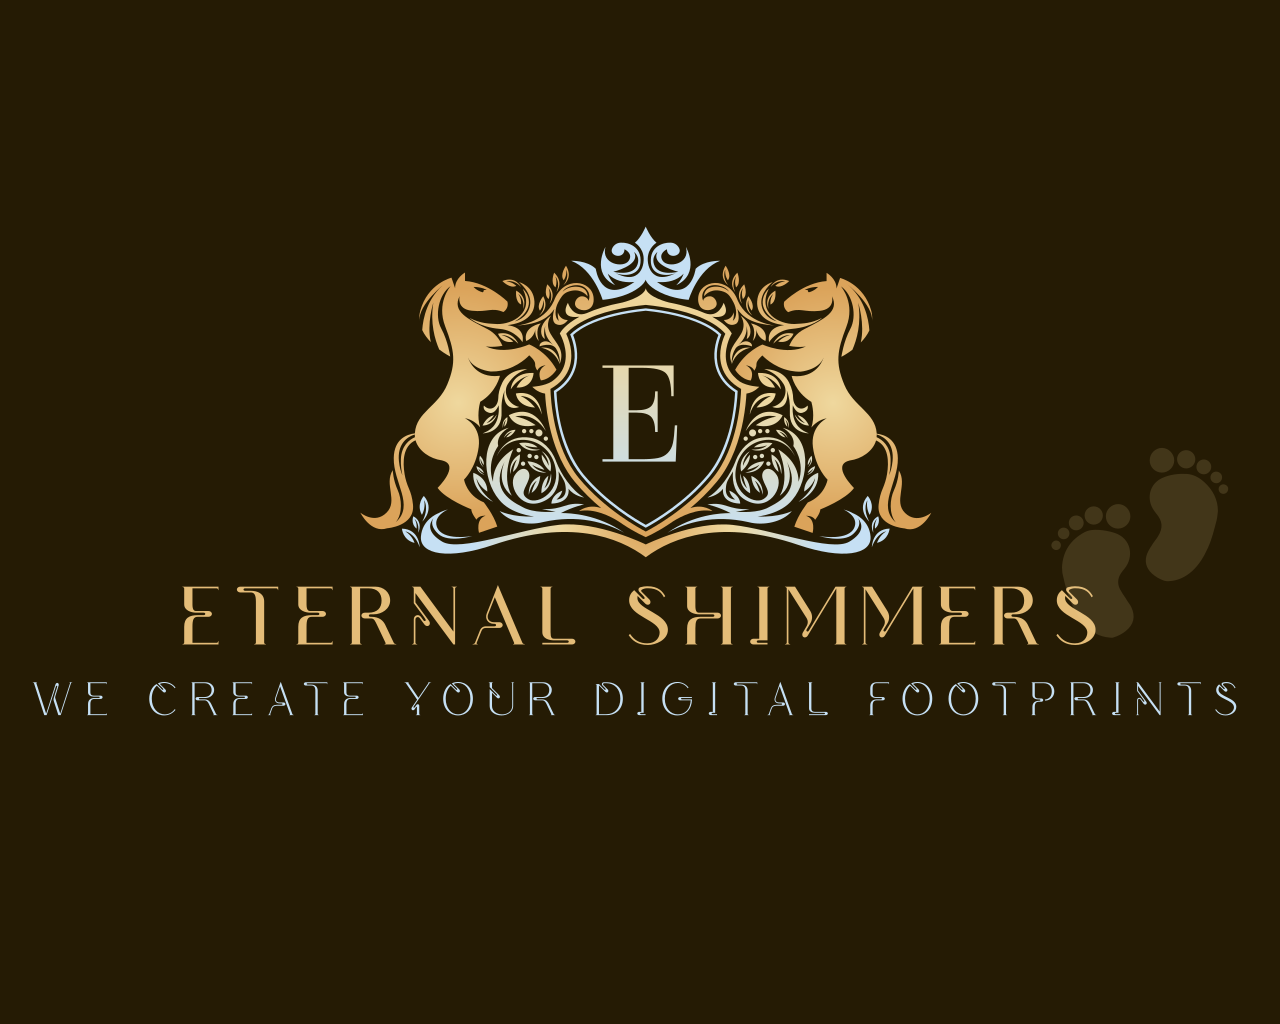 ETERNAL SHIMMERS 's logo